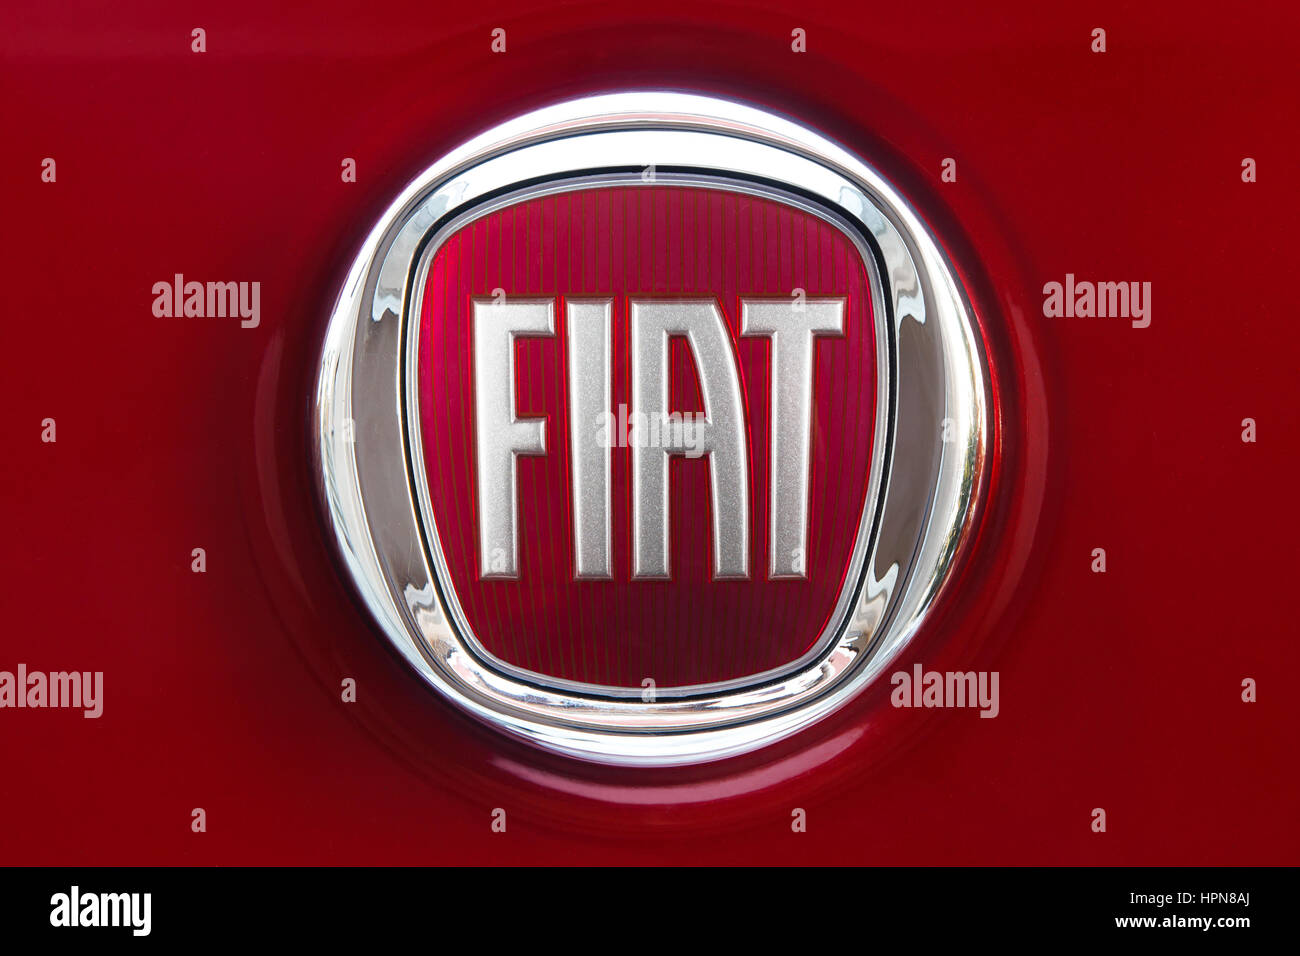 GDANSK, Polonia - 12 febbraio 2017: Nuova Fiat logo su un colore rosso scuro del corpo. Fiat Automobiles è il più grande produttore di automobili in Italia. Foto Stock